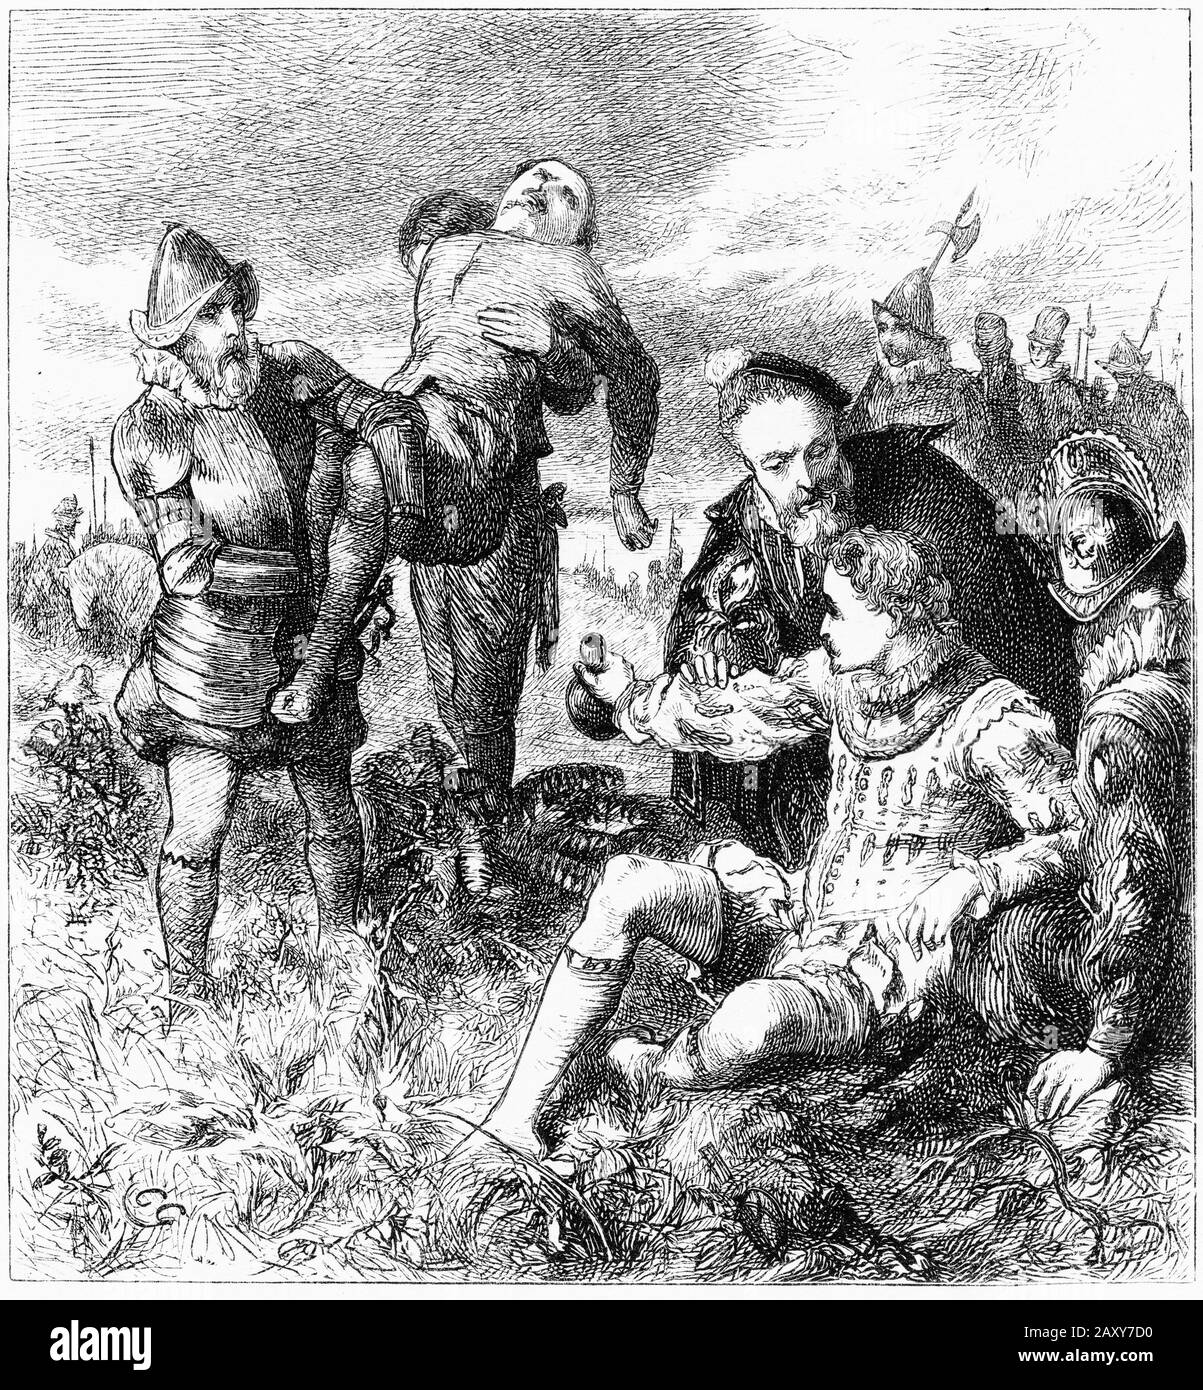 Engravingt von Sir Philip Sidney (1554 - 1586) englischer Dichter, Höfling, Gelehrter und Soldat, der als eine der prominentesten Persönlichkeiten des elisabethanischen Zeitalters in Erinnerung bleibt, und besonders wegen seines selbstlosen Tapferkeitsausgleichs auf dem Schlachtfeld in Zutphen im Jahr 1586. Während er verletzt lag, gab er sein Wasser einem anderen verletzten Soldaten und sagte: "Deine Notwendigkeit ist noch größer als meine." Stockfoto